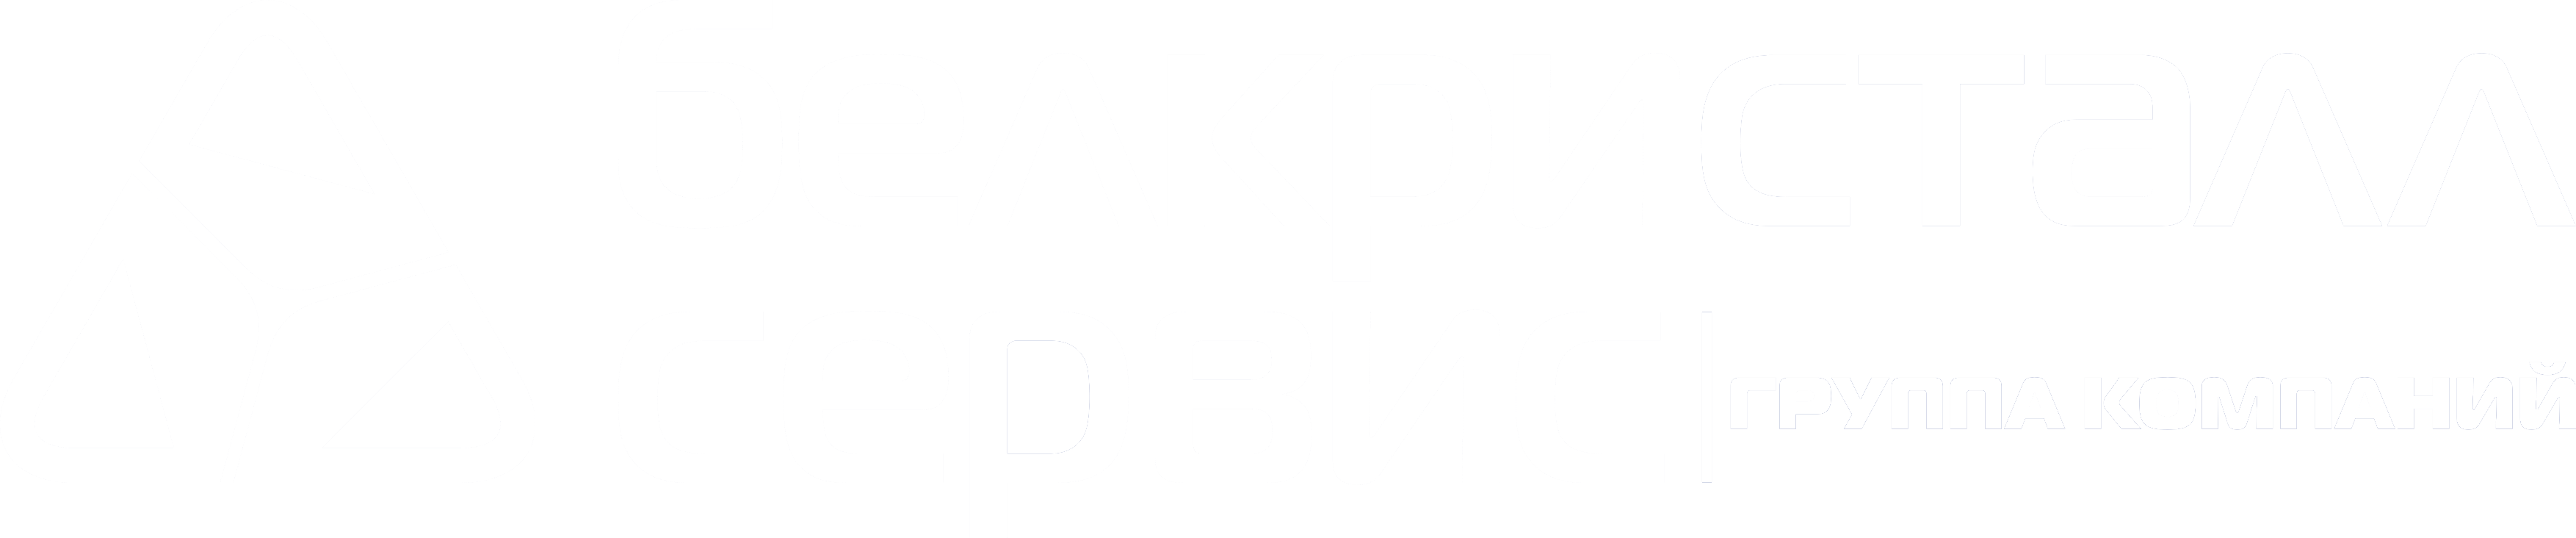 ДримКС Лого